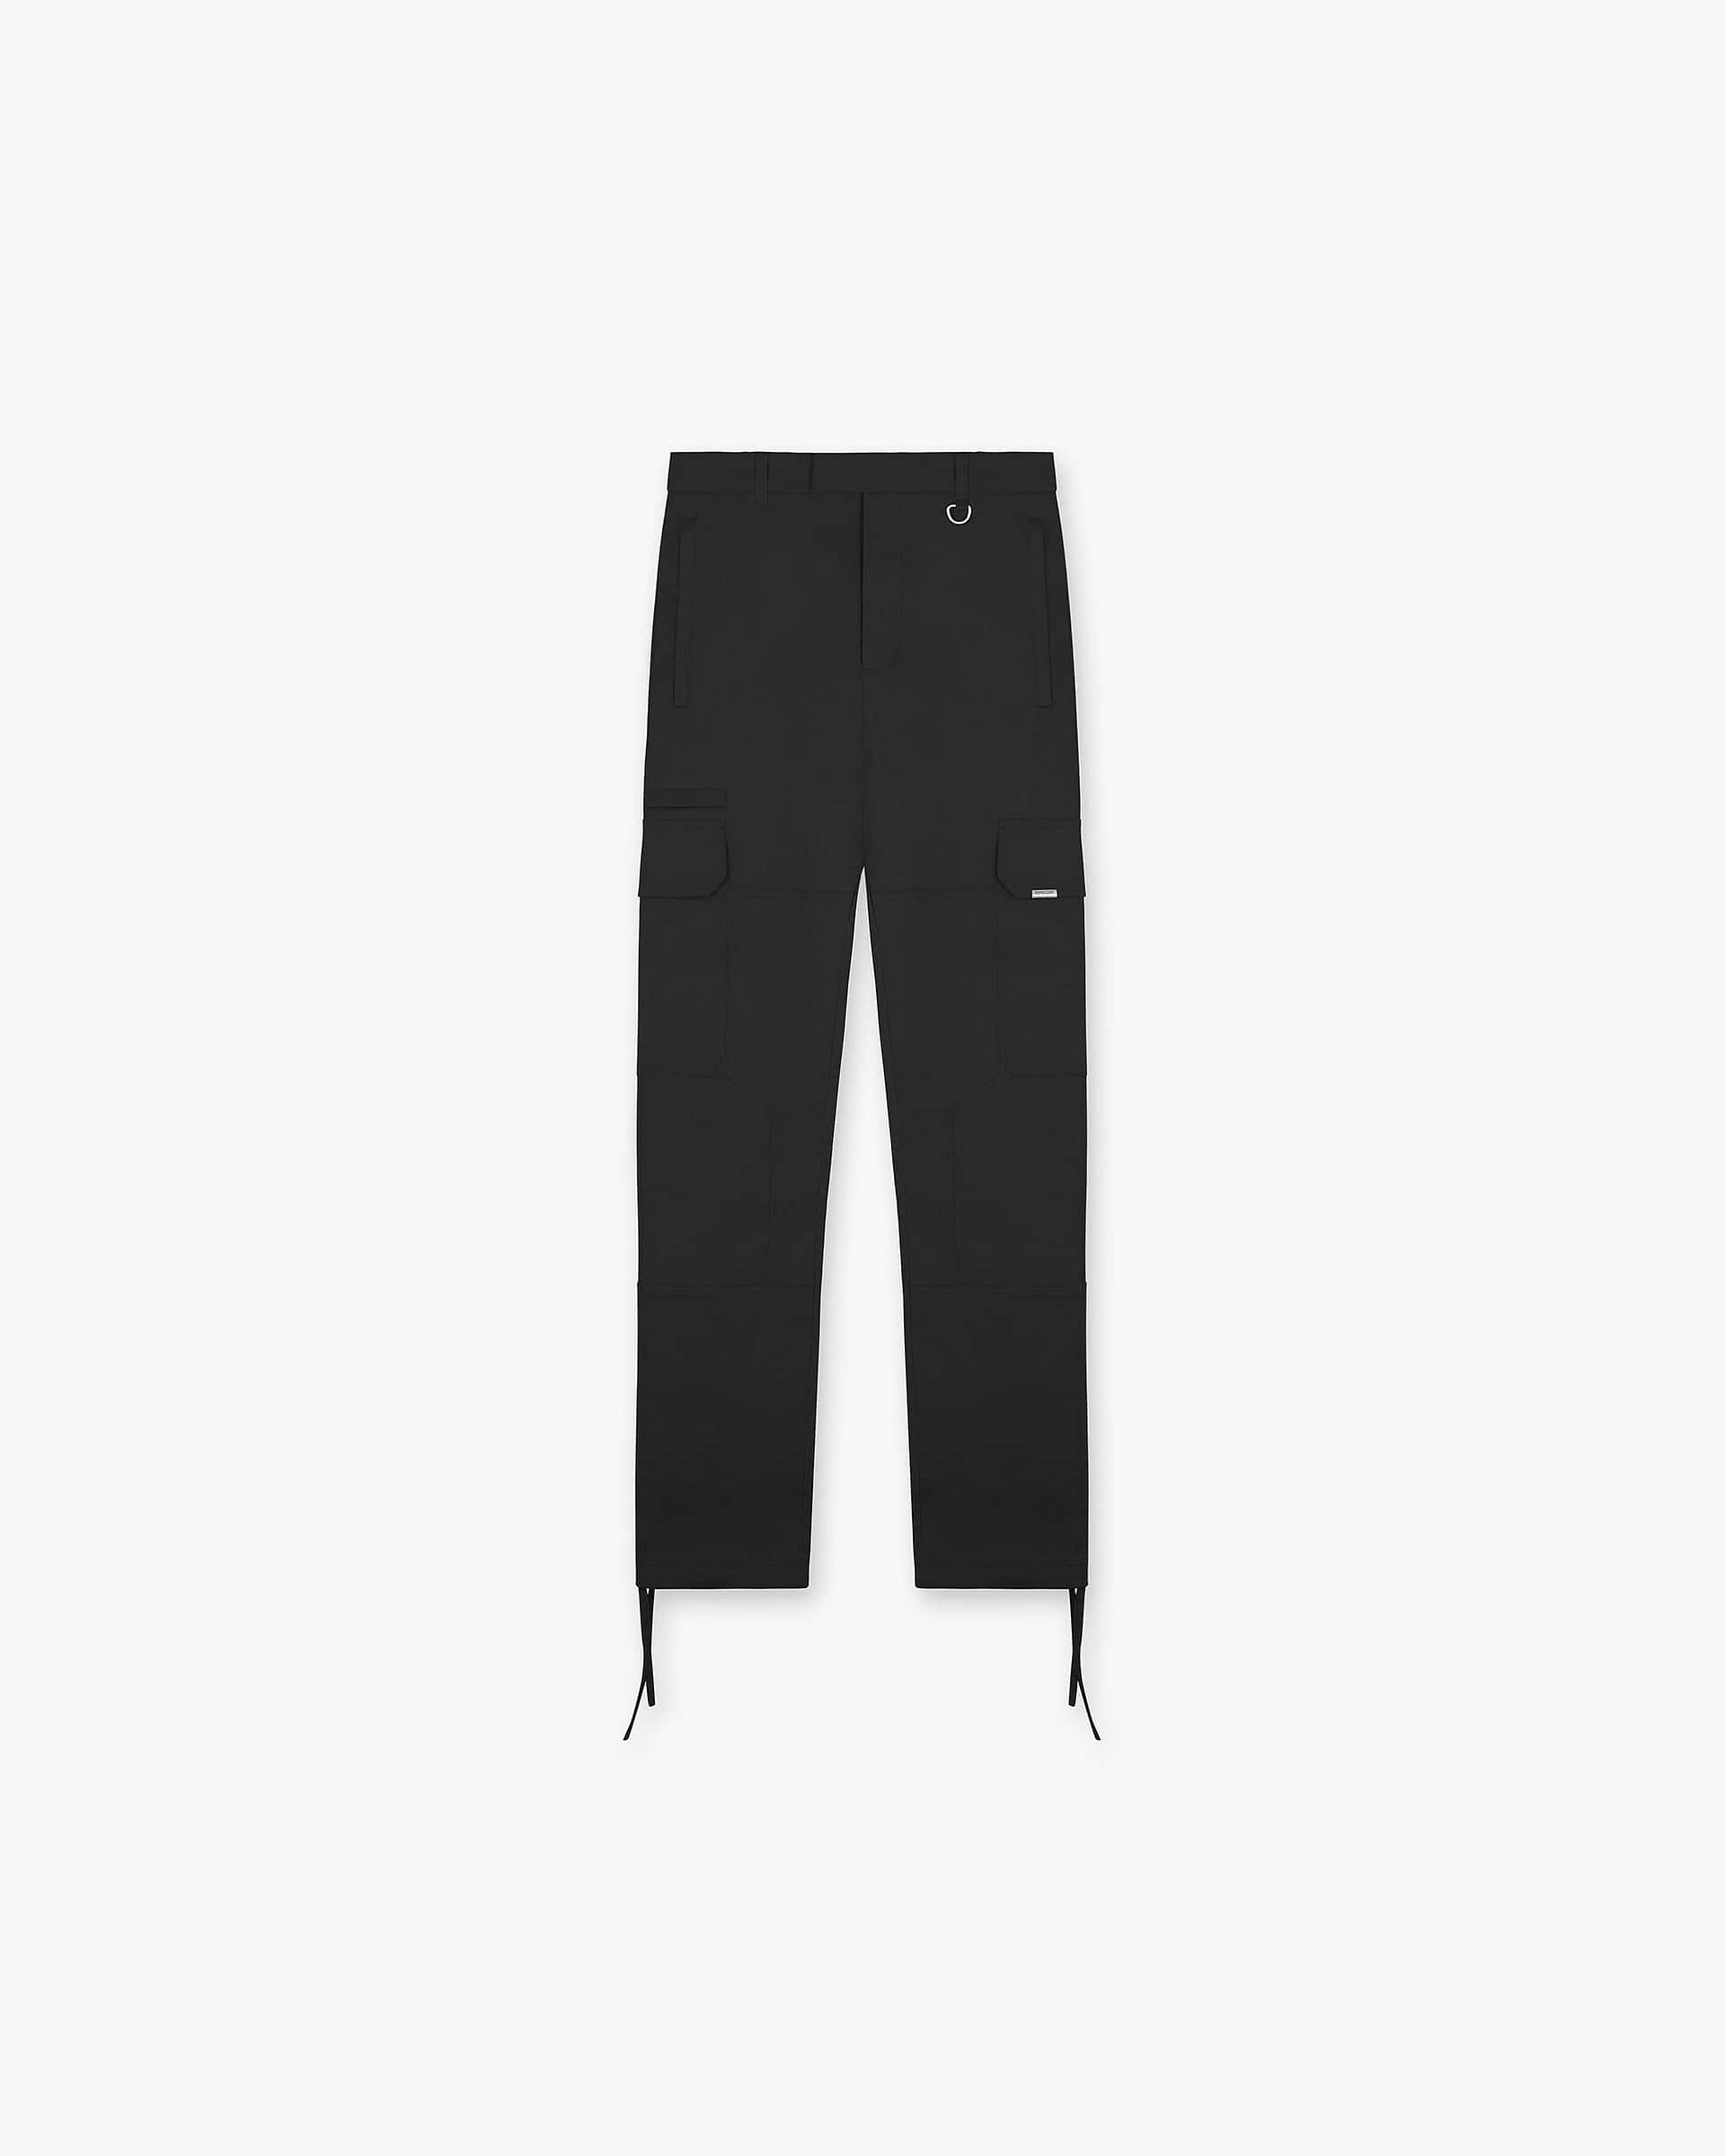 Cargo Pant | Black Pants FW22 | Represent Clo